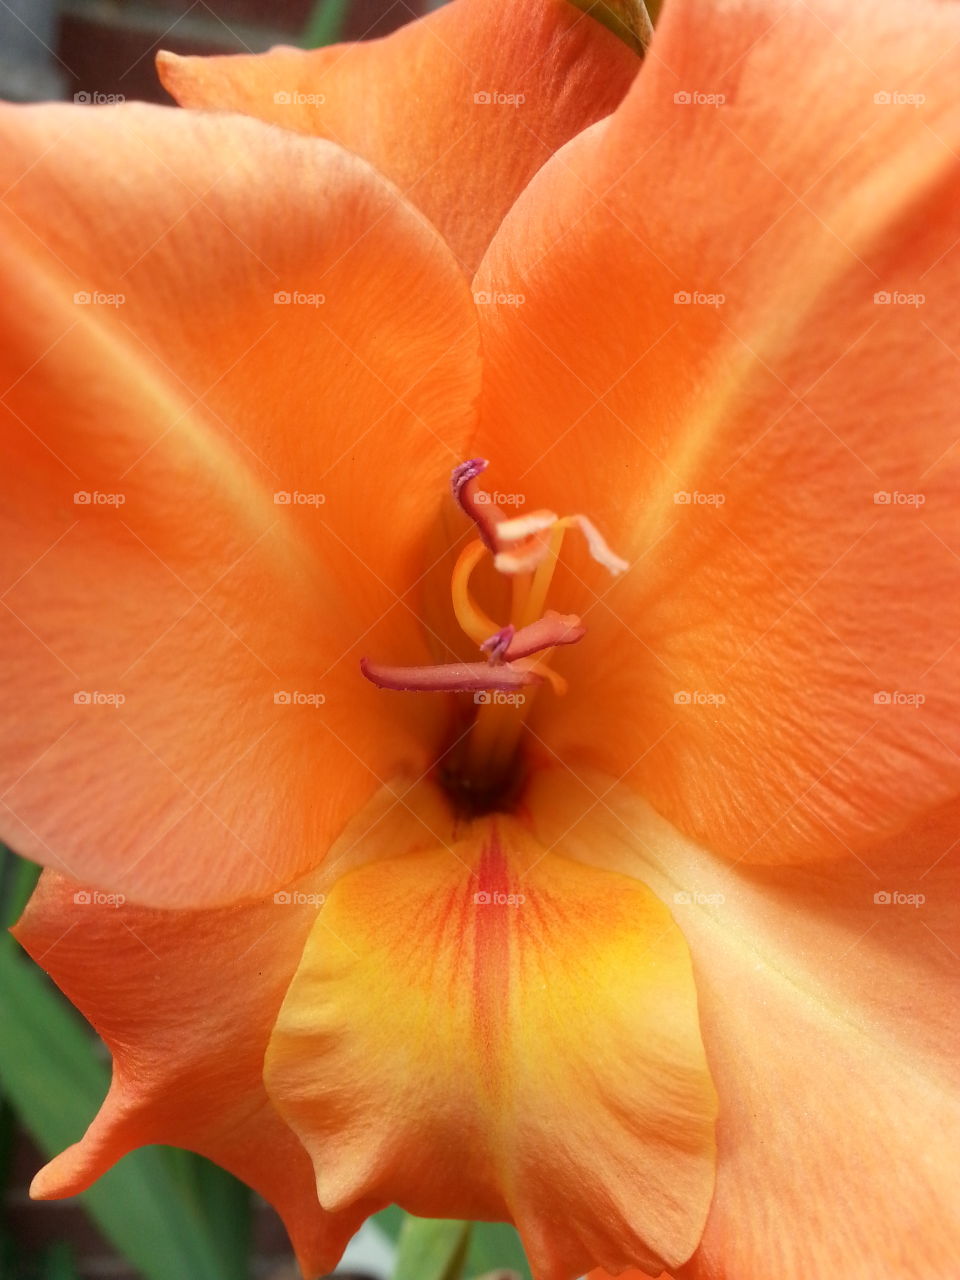 Peach/Orange Tropical  looking Flower